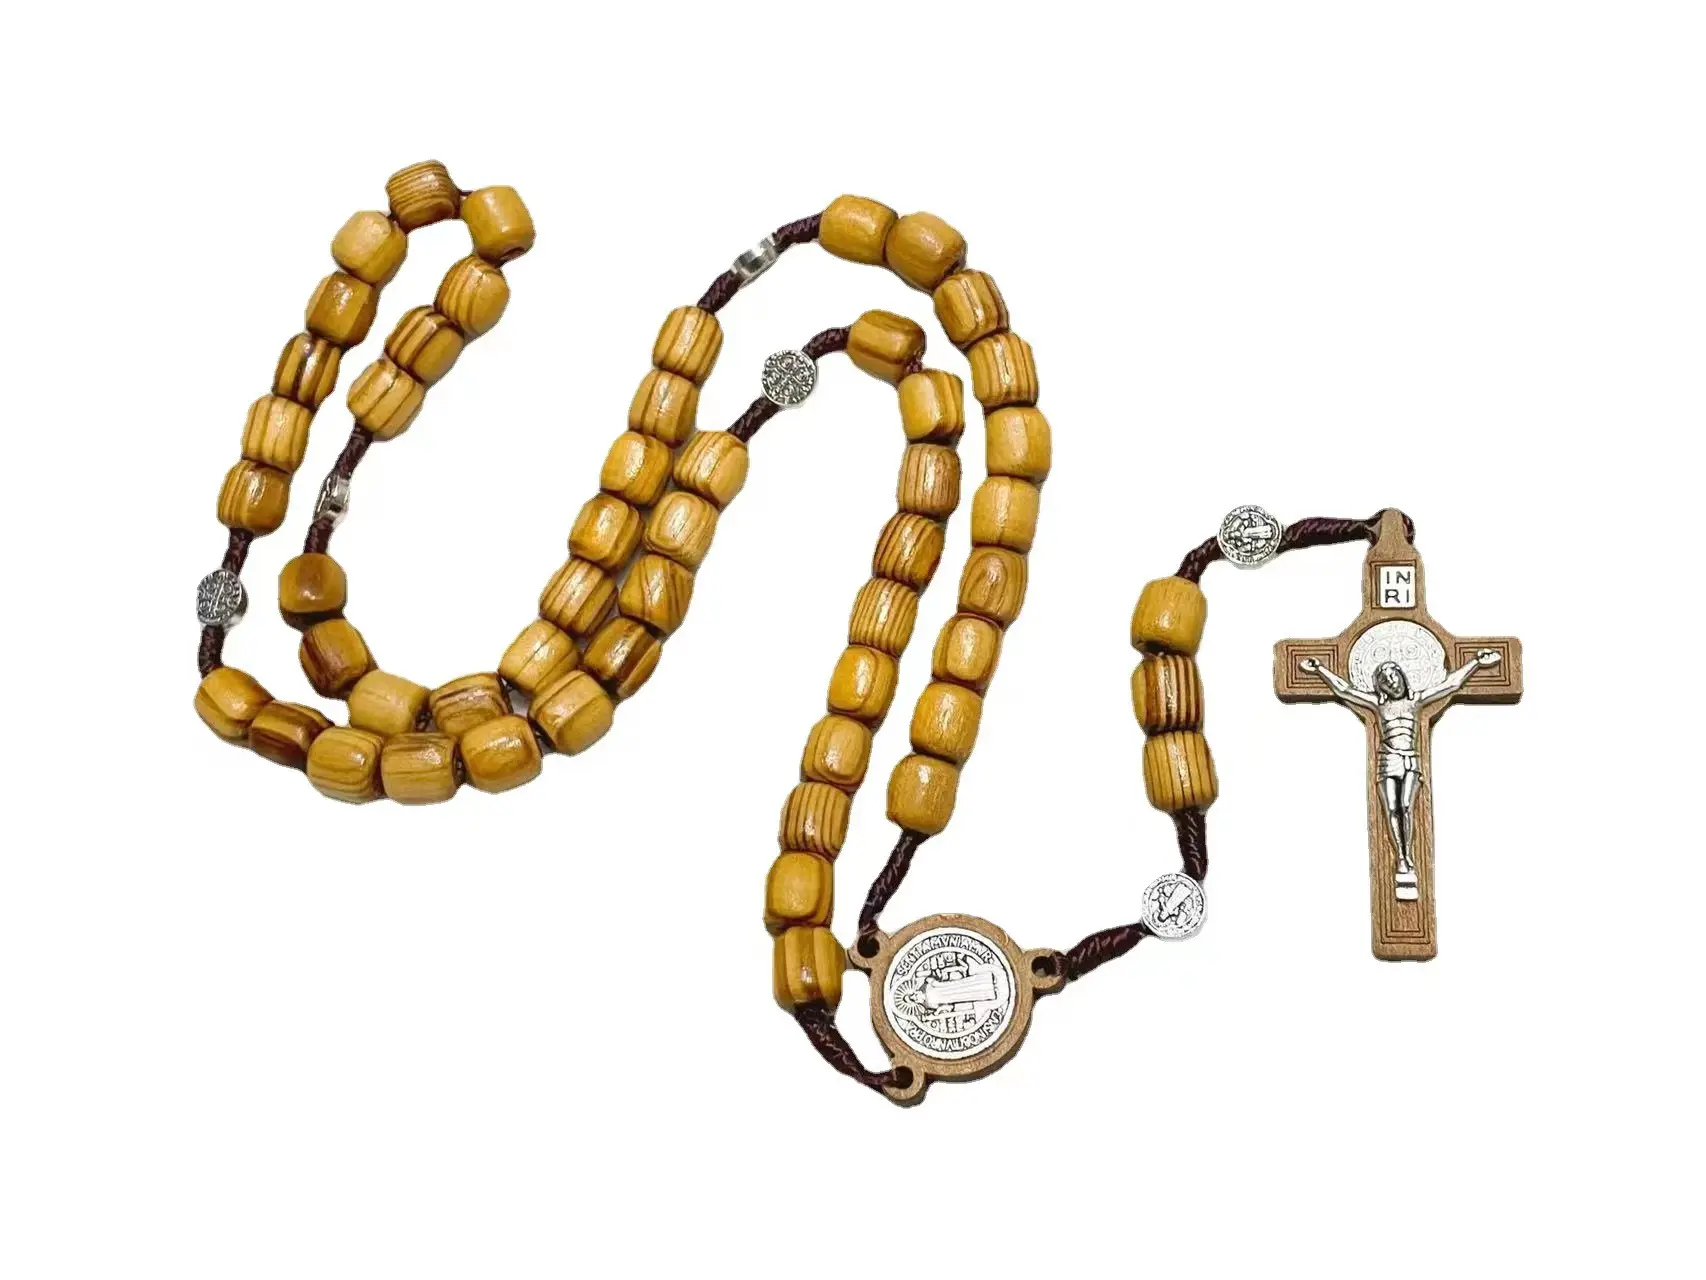 Katholischer Rosenkranz Katholizismus Geschenk Gebet 10mm Perlen Holzkreuz Halskette Perlen Orthodoxe Holz perlen Religiöser Schmuck